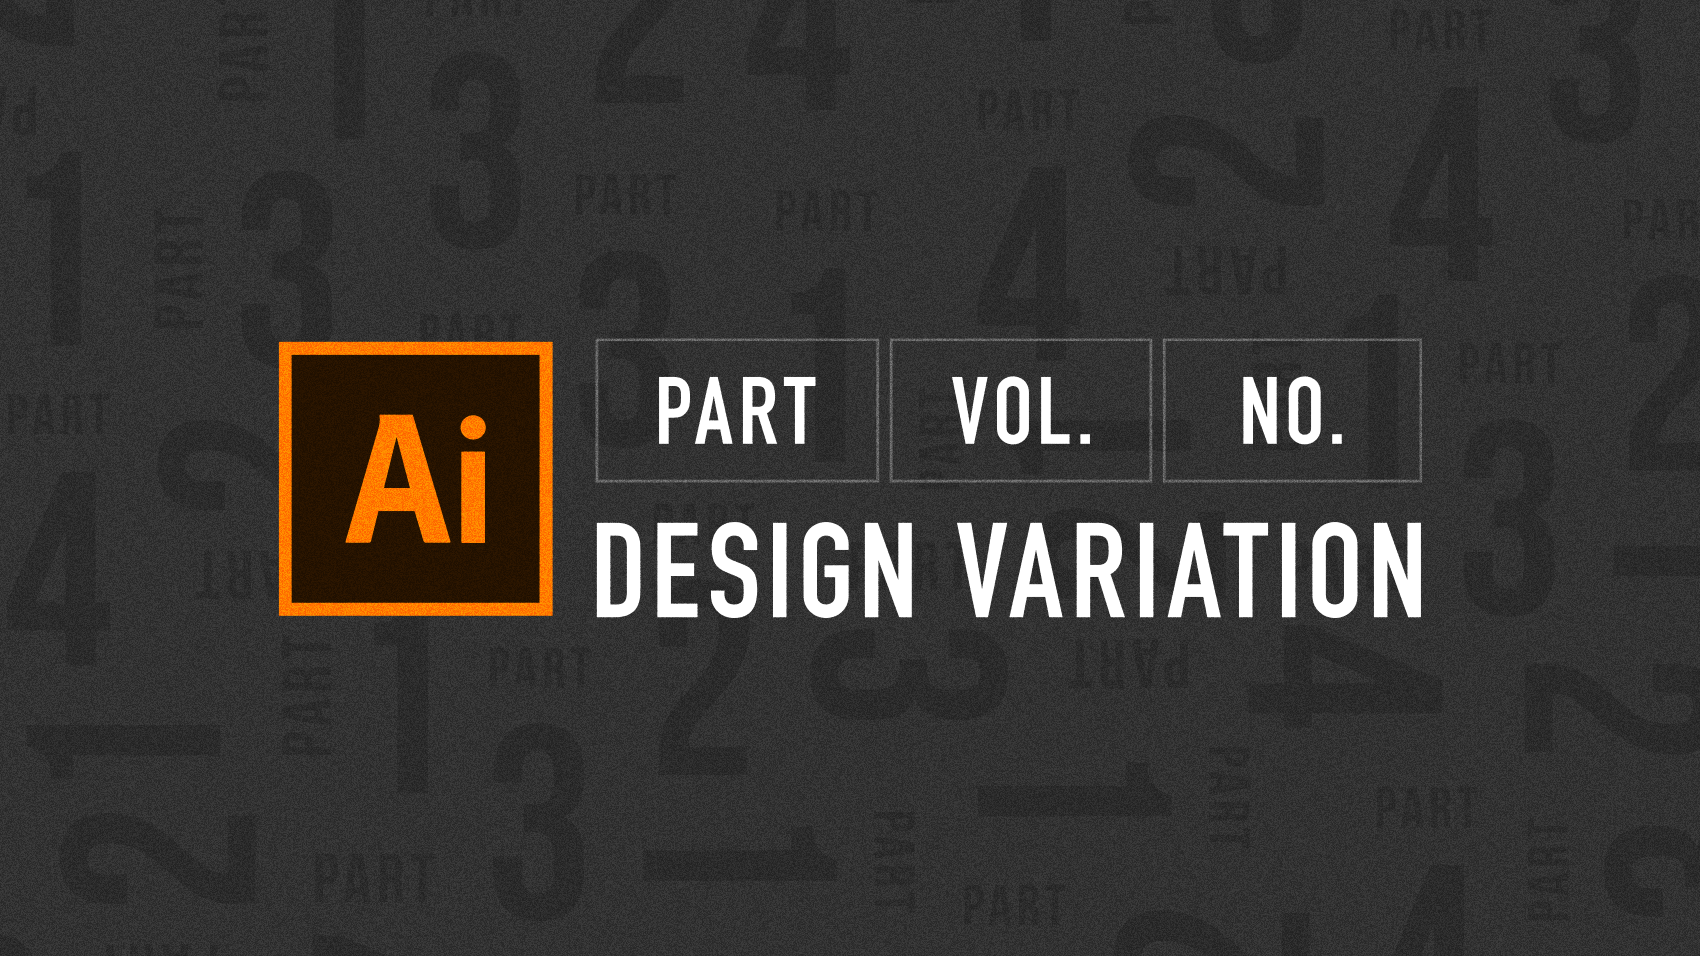 「PART」「vol」「No」をタイポグラフィを用いてつくるデザインバリエーション